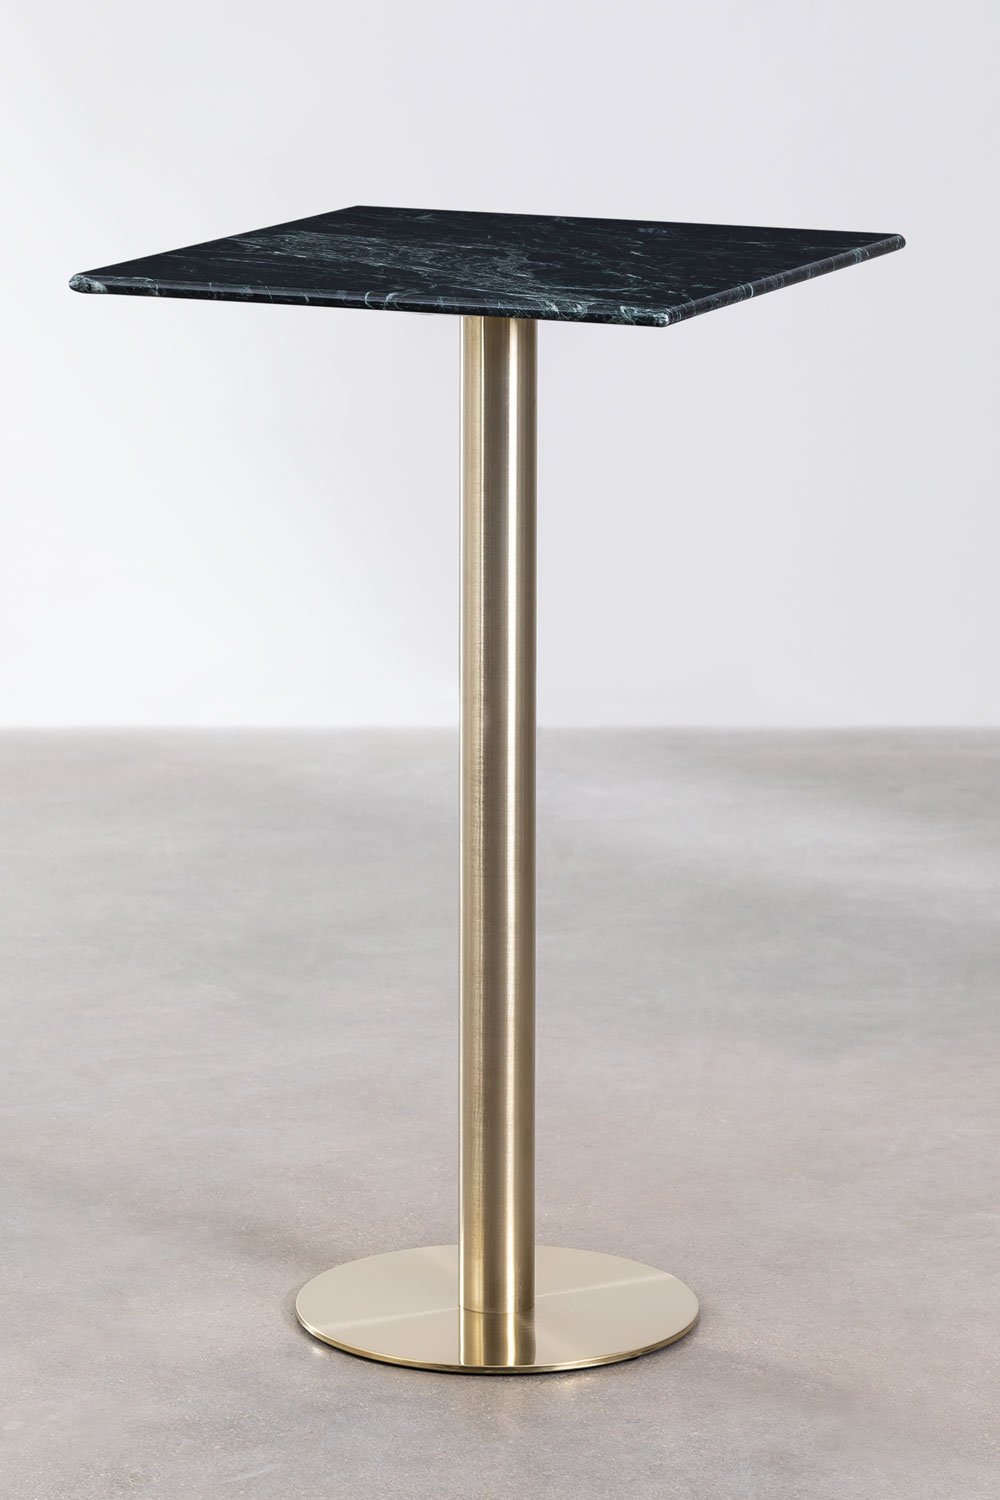 Hoge vierkante marmeren bartafel (60x60 cm) Cosmopolitan, galerij beeld 1